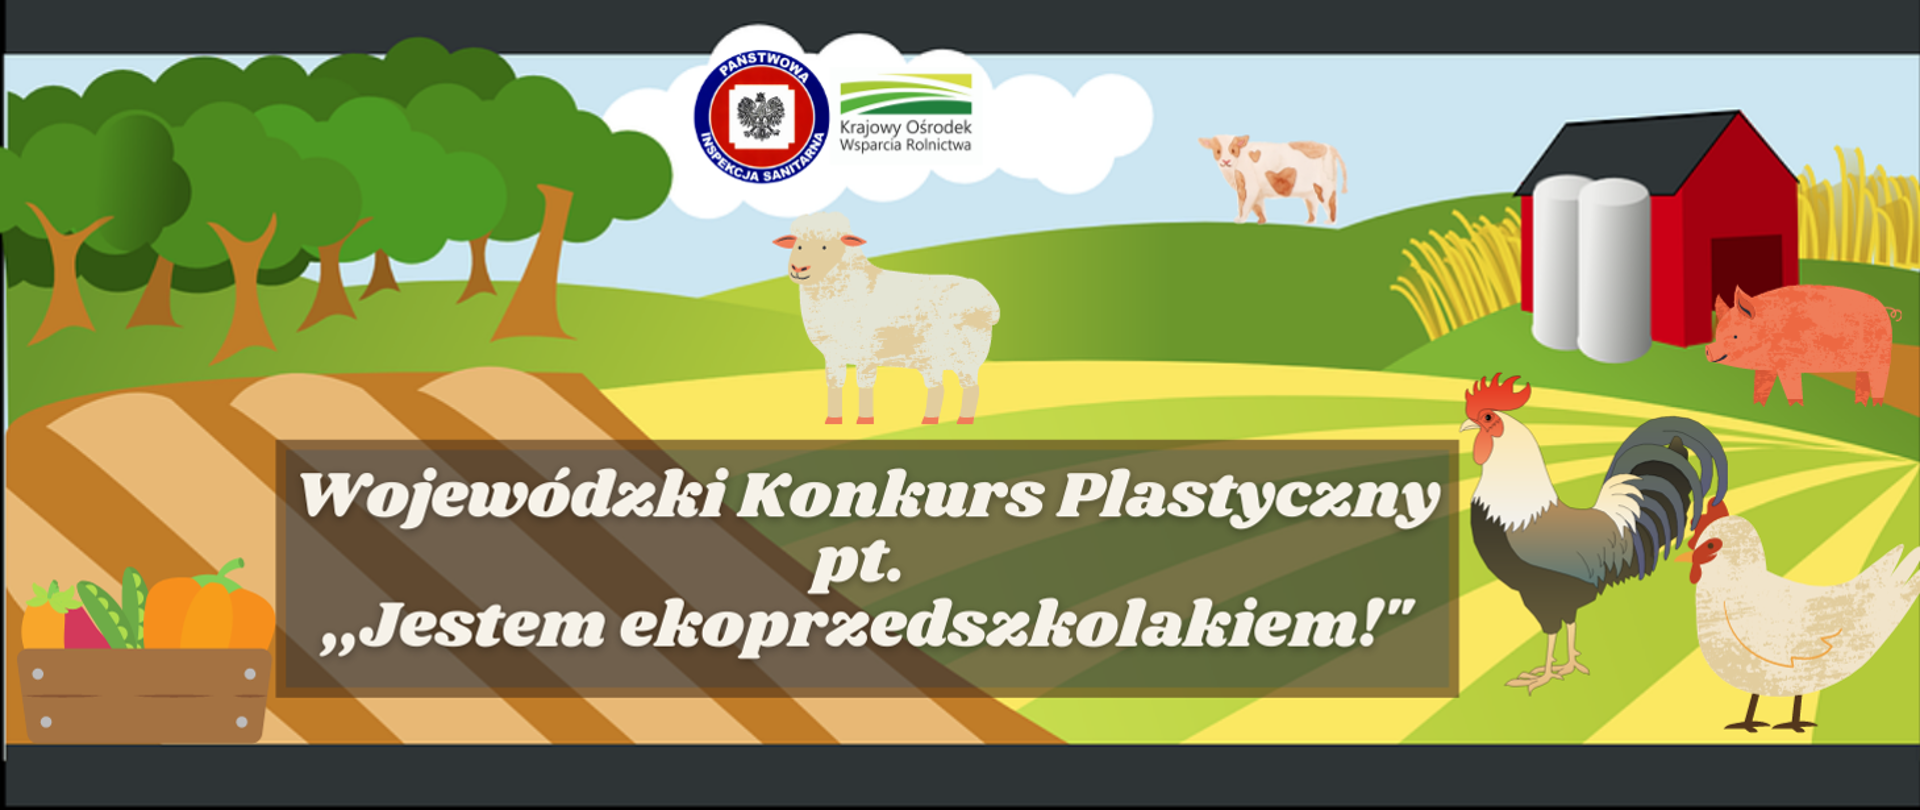 Wojewódzki Konkurs Plastyczny pt. "Jestem ekoprzedszkolakiem!"